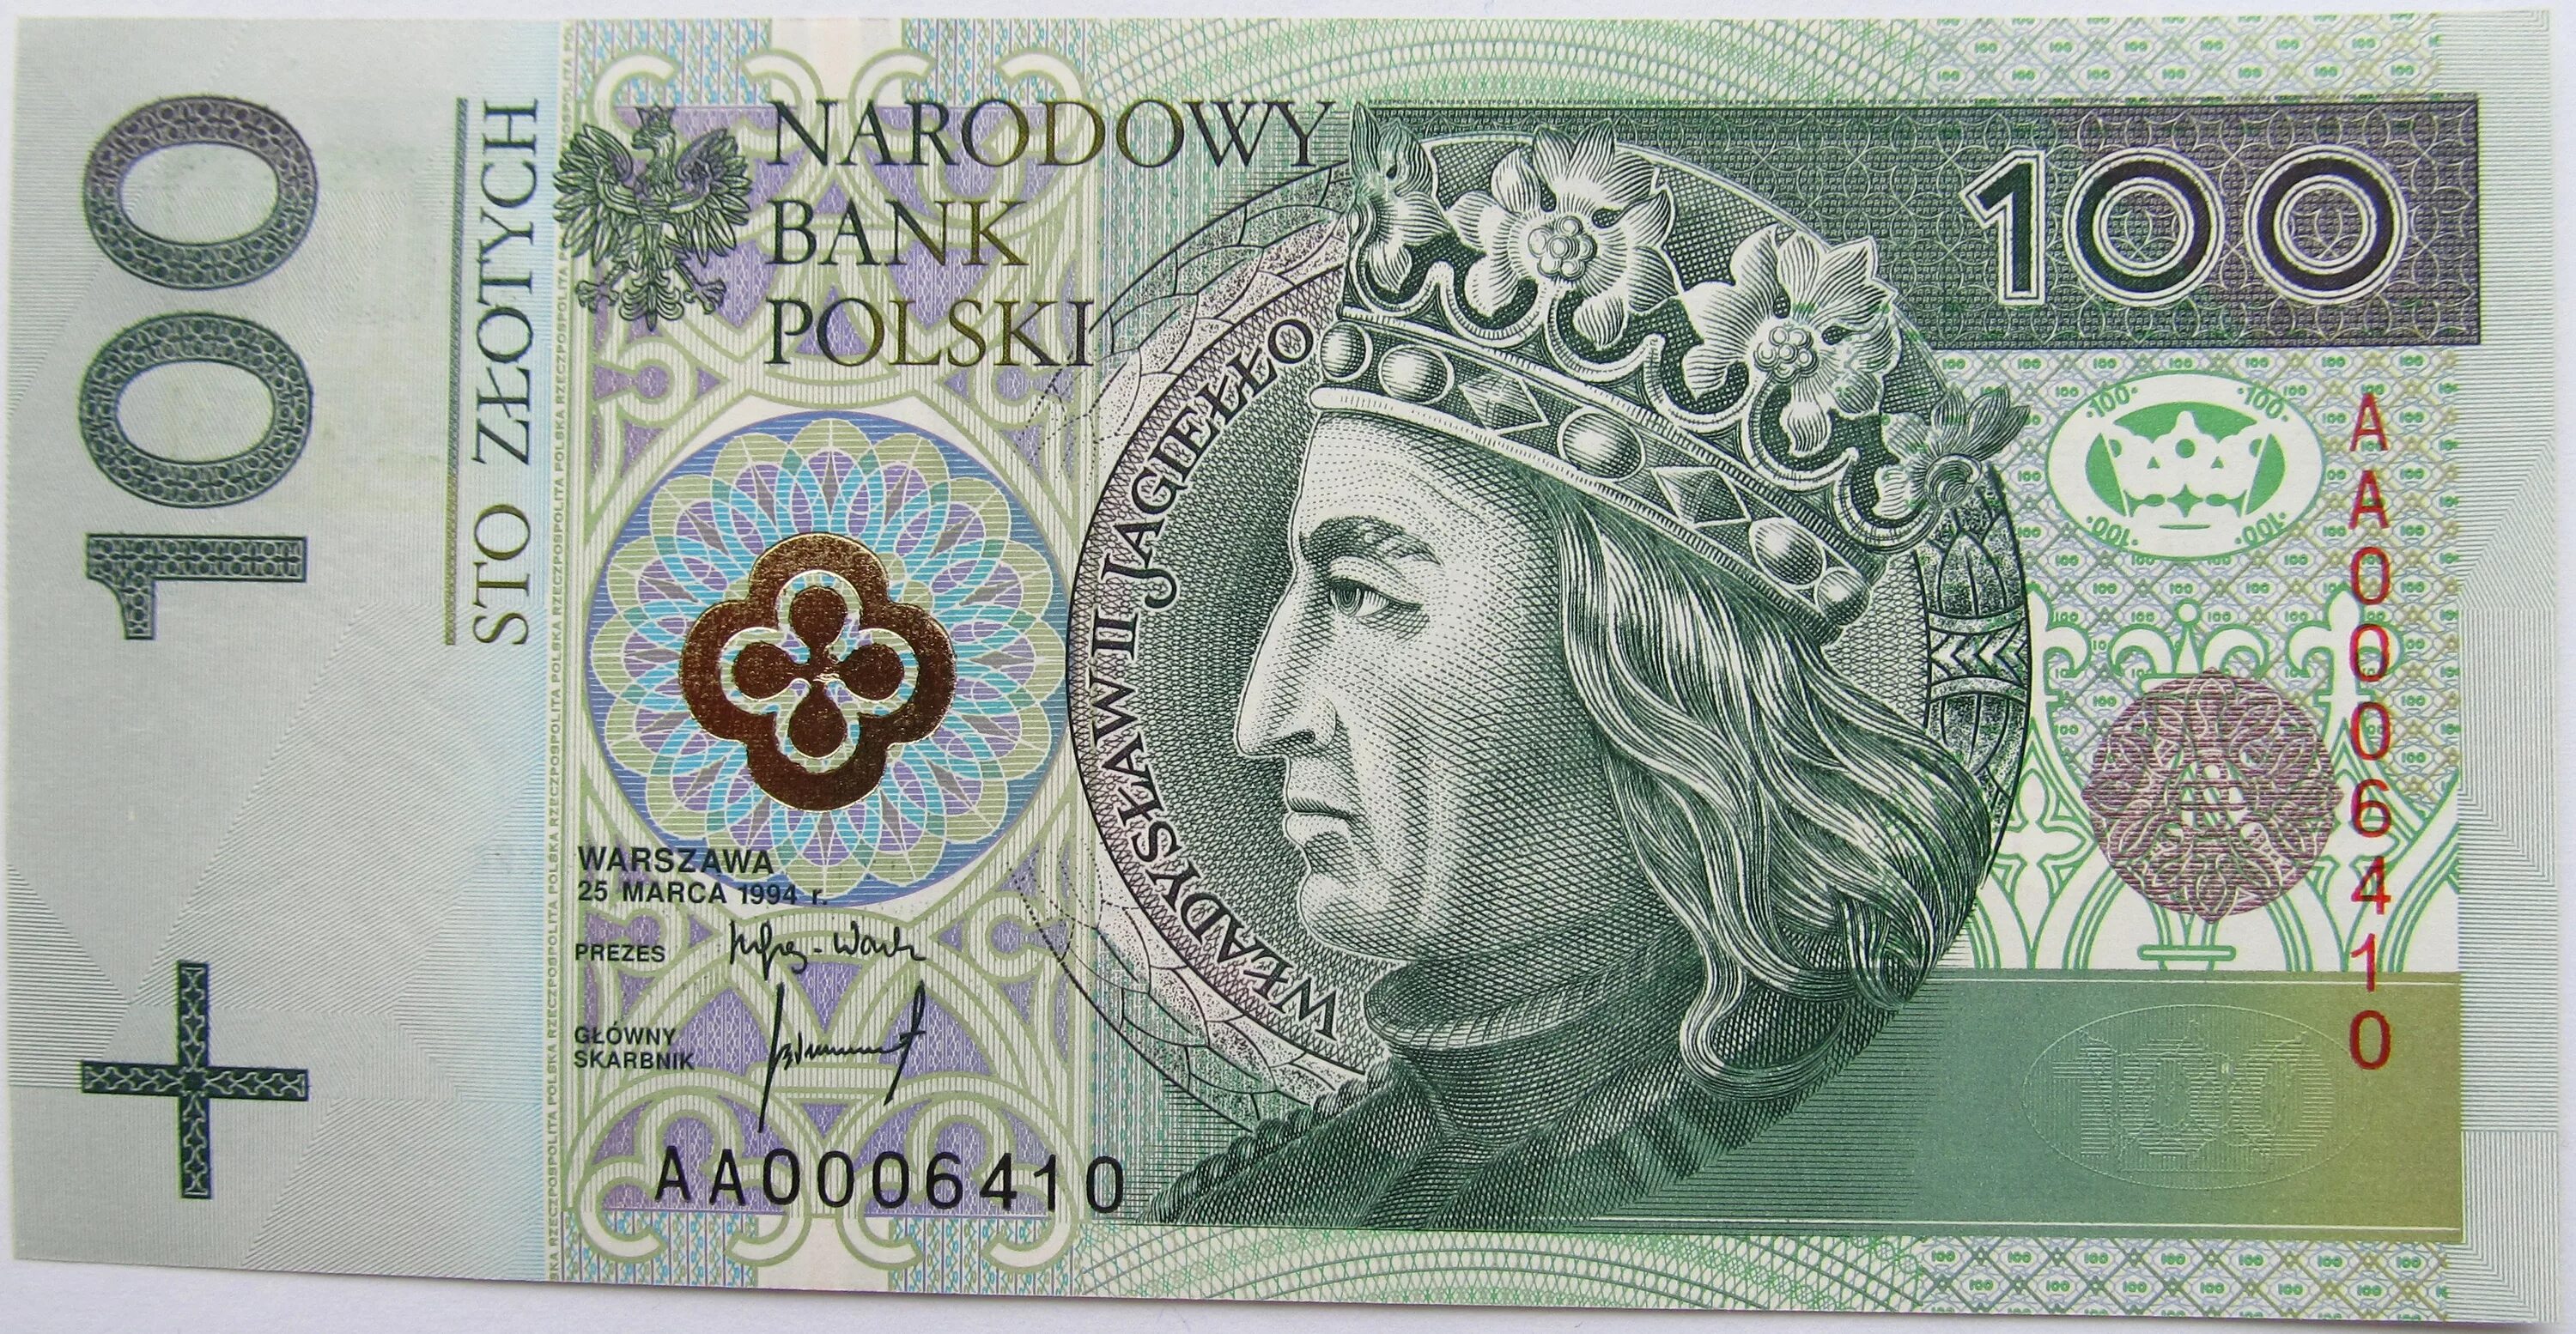 Польская денежная единица. Польская банкнота 100 злотых. Польские деньги 100 злотых. Банкноты Польши 100 злотый. 200 Zlotych.